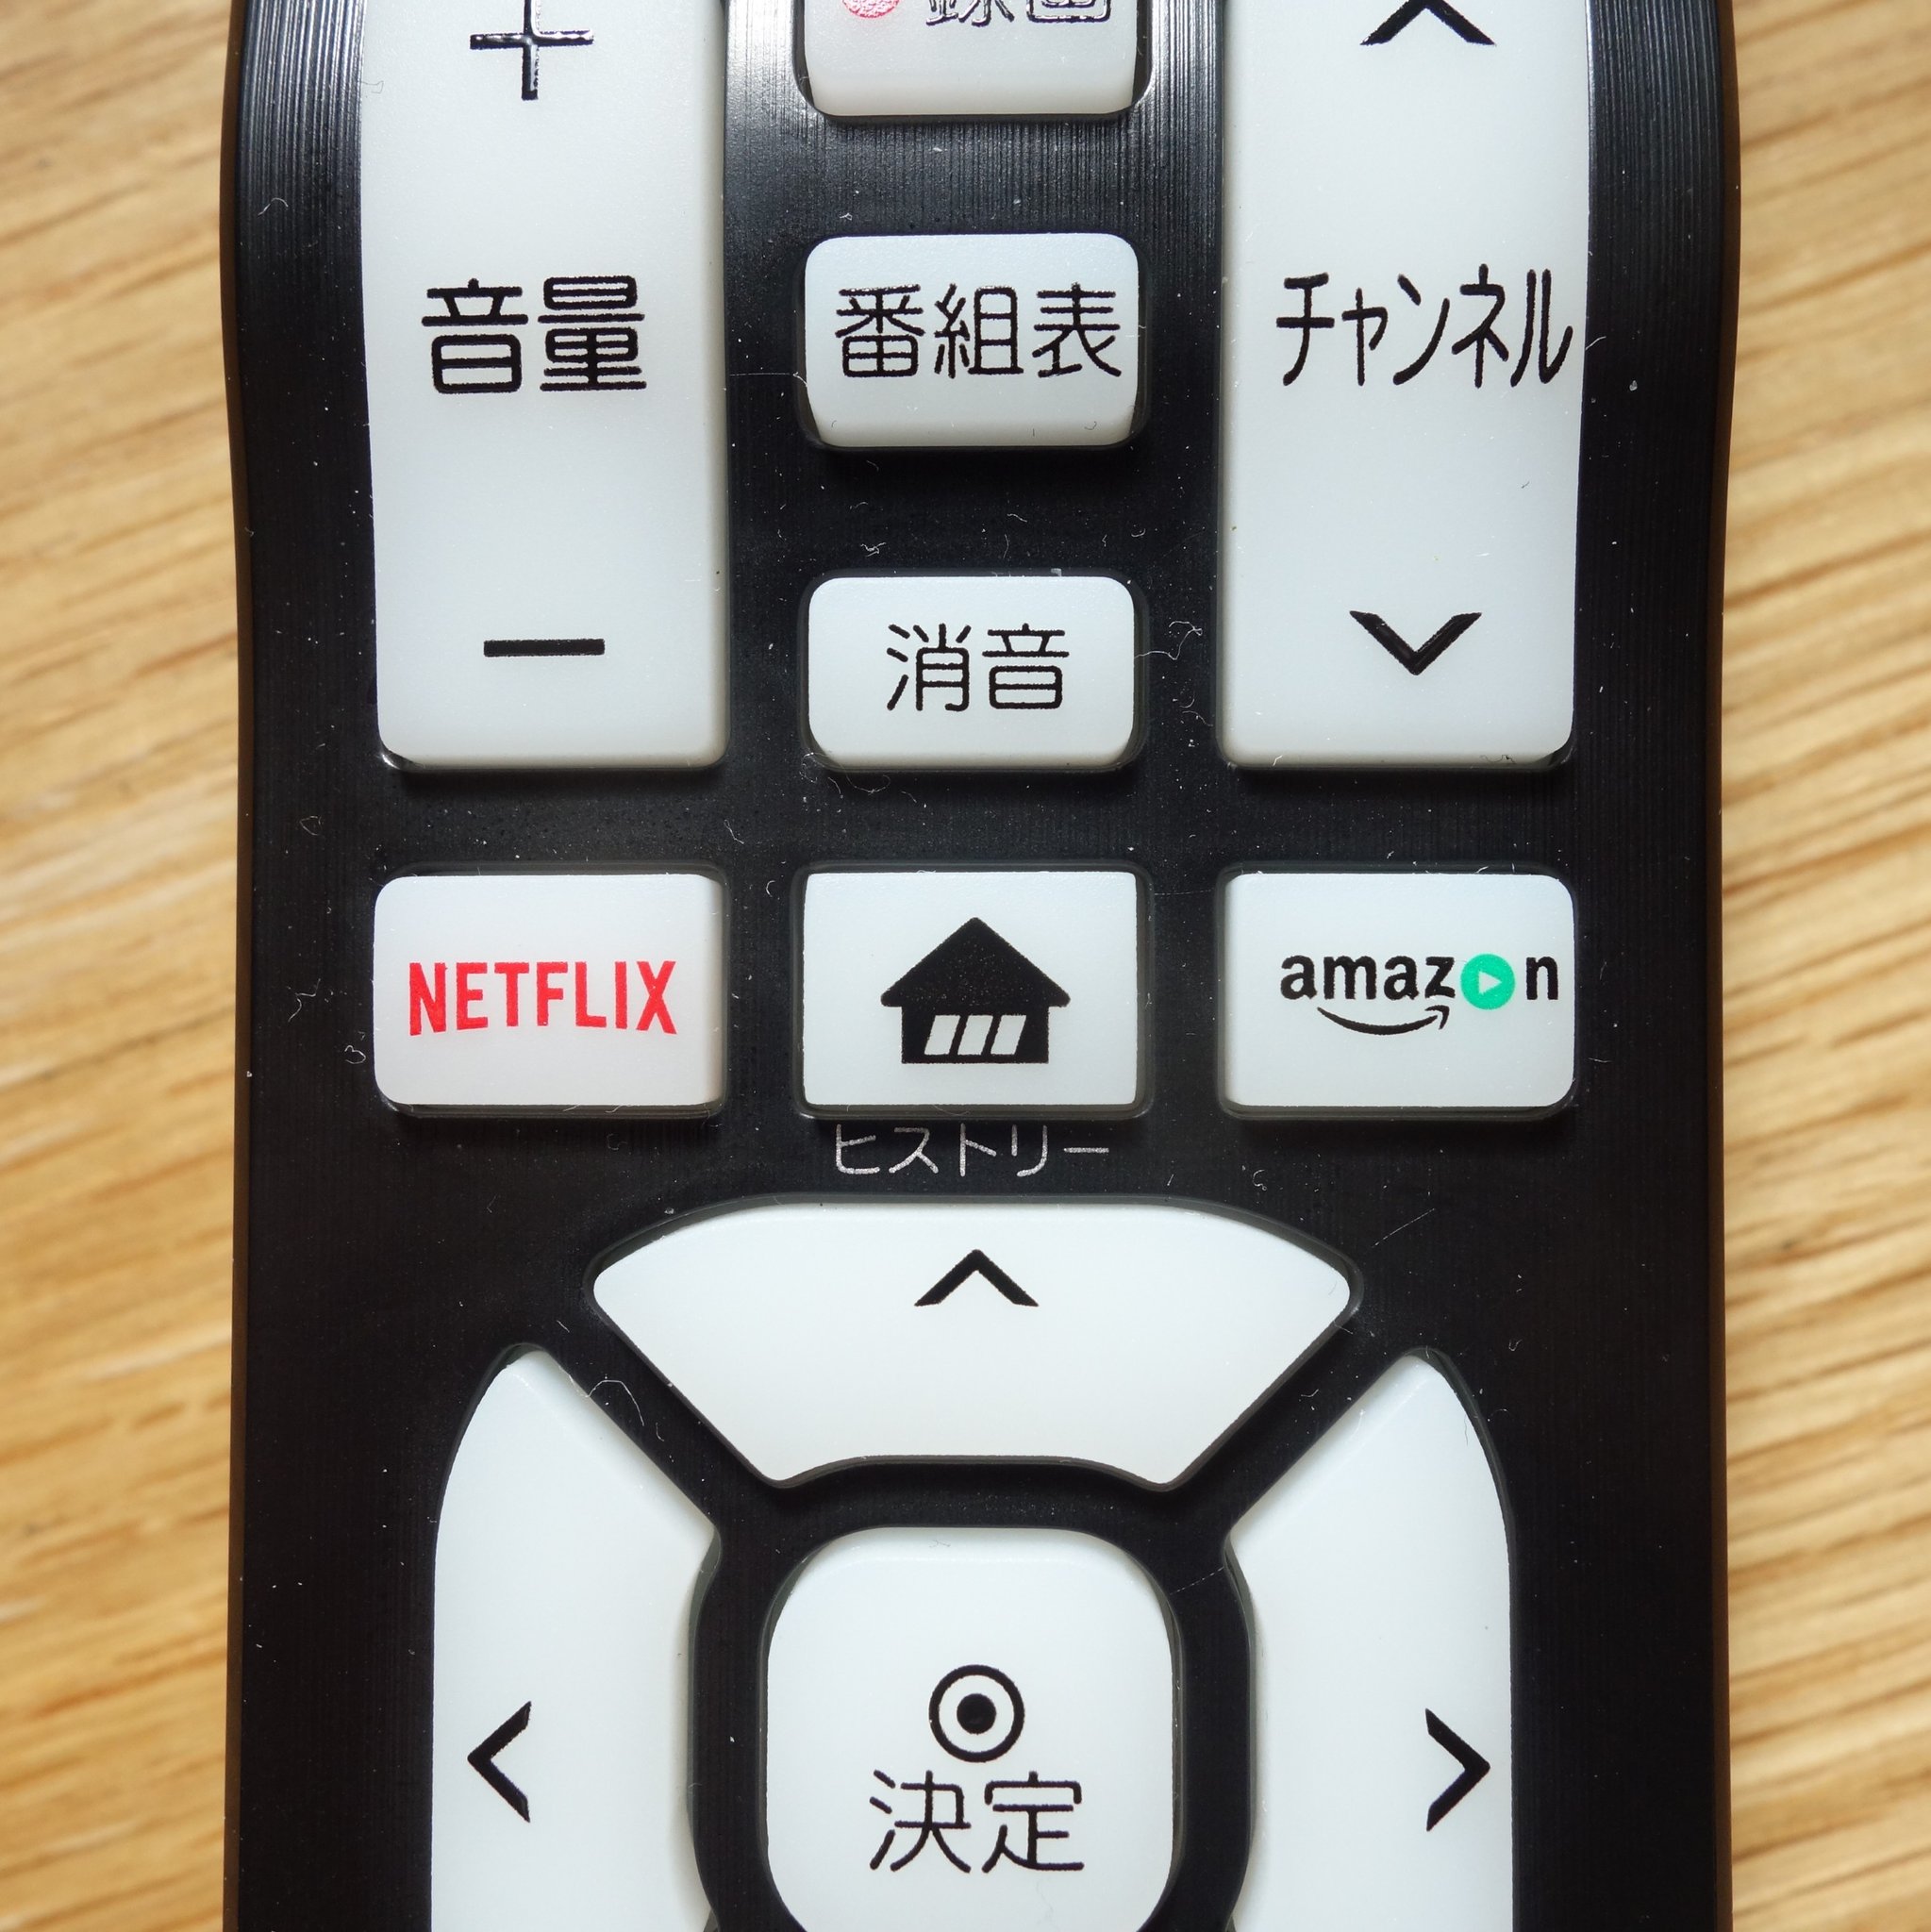 Shikakun 最近のテレビのリモコンには Netflix のボタンがついてるらしいというのは知ってたけど Lg のテレビ のリモコンは Amazon プライムビデオのボタンもついてて驚いたし チャンネルの数字ボタンより大きく押しやすいところに置かれてて すごいなあ